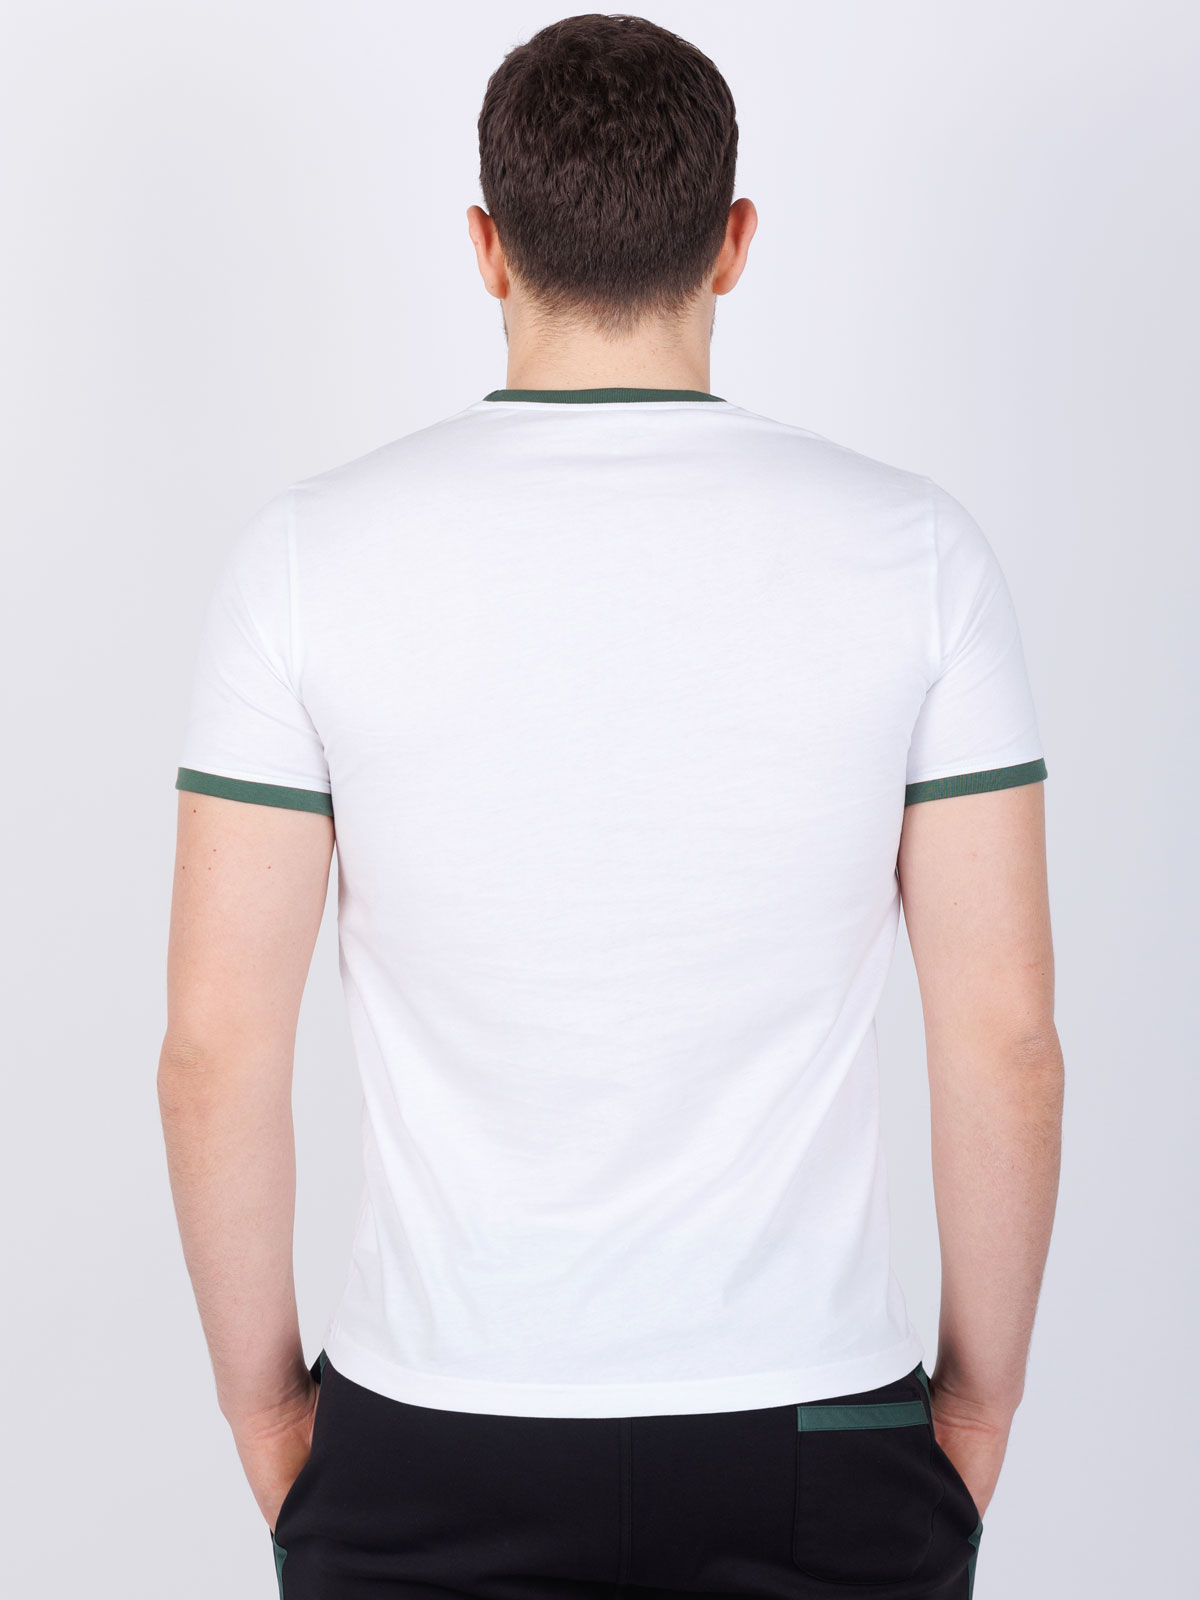 Κοντομάνικη μπλούζα με πράσινη στάμπα - 96467 € 23.62 img3